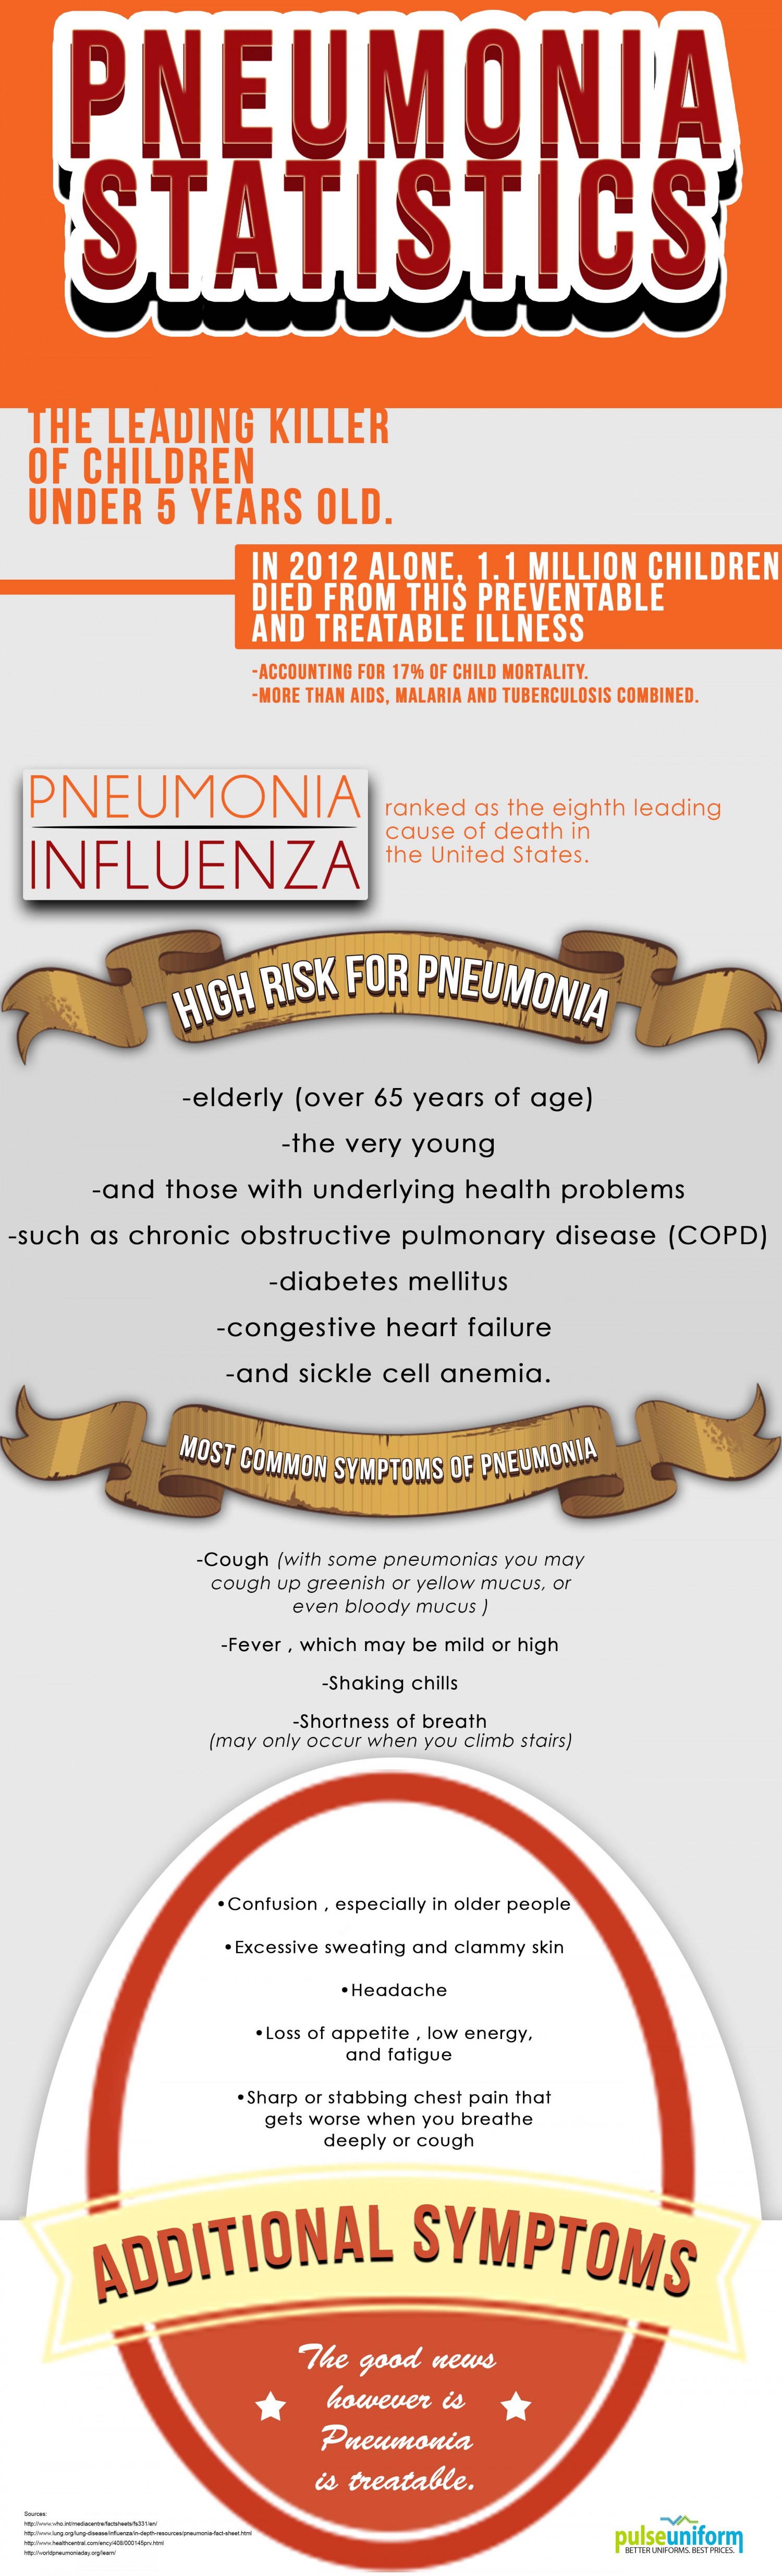 Pneumonia Facts